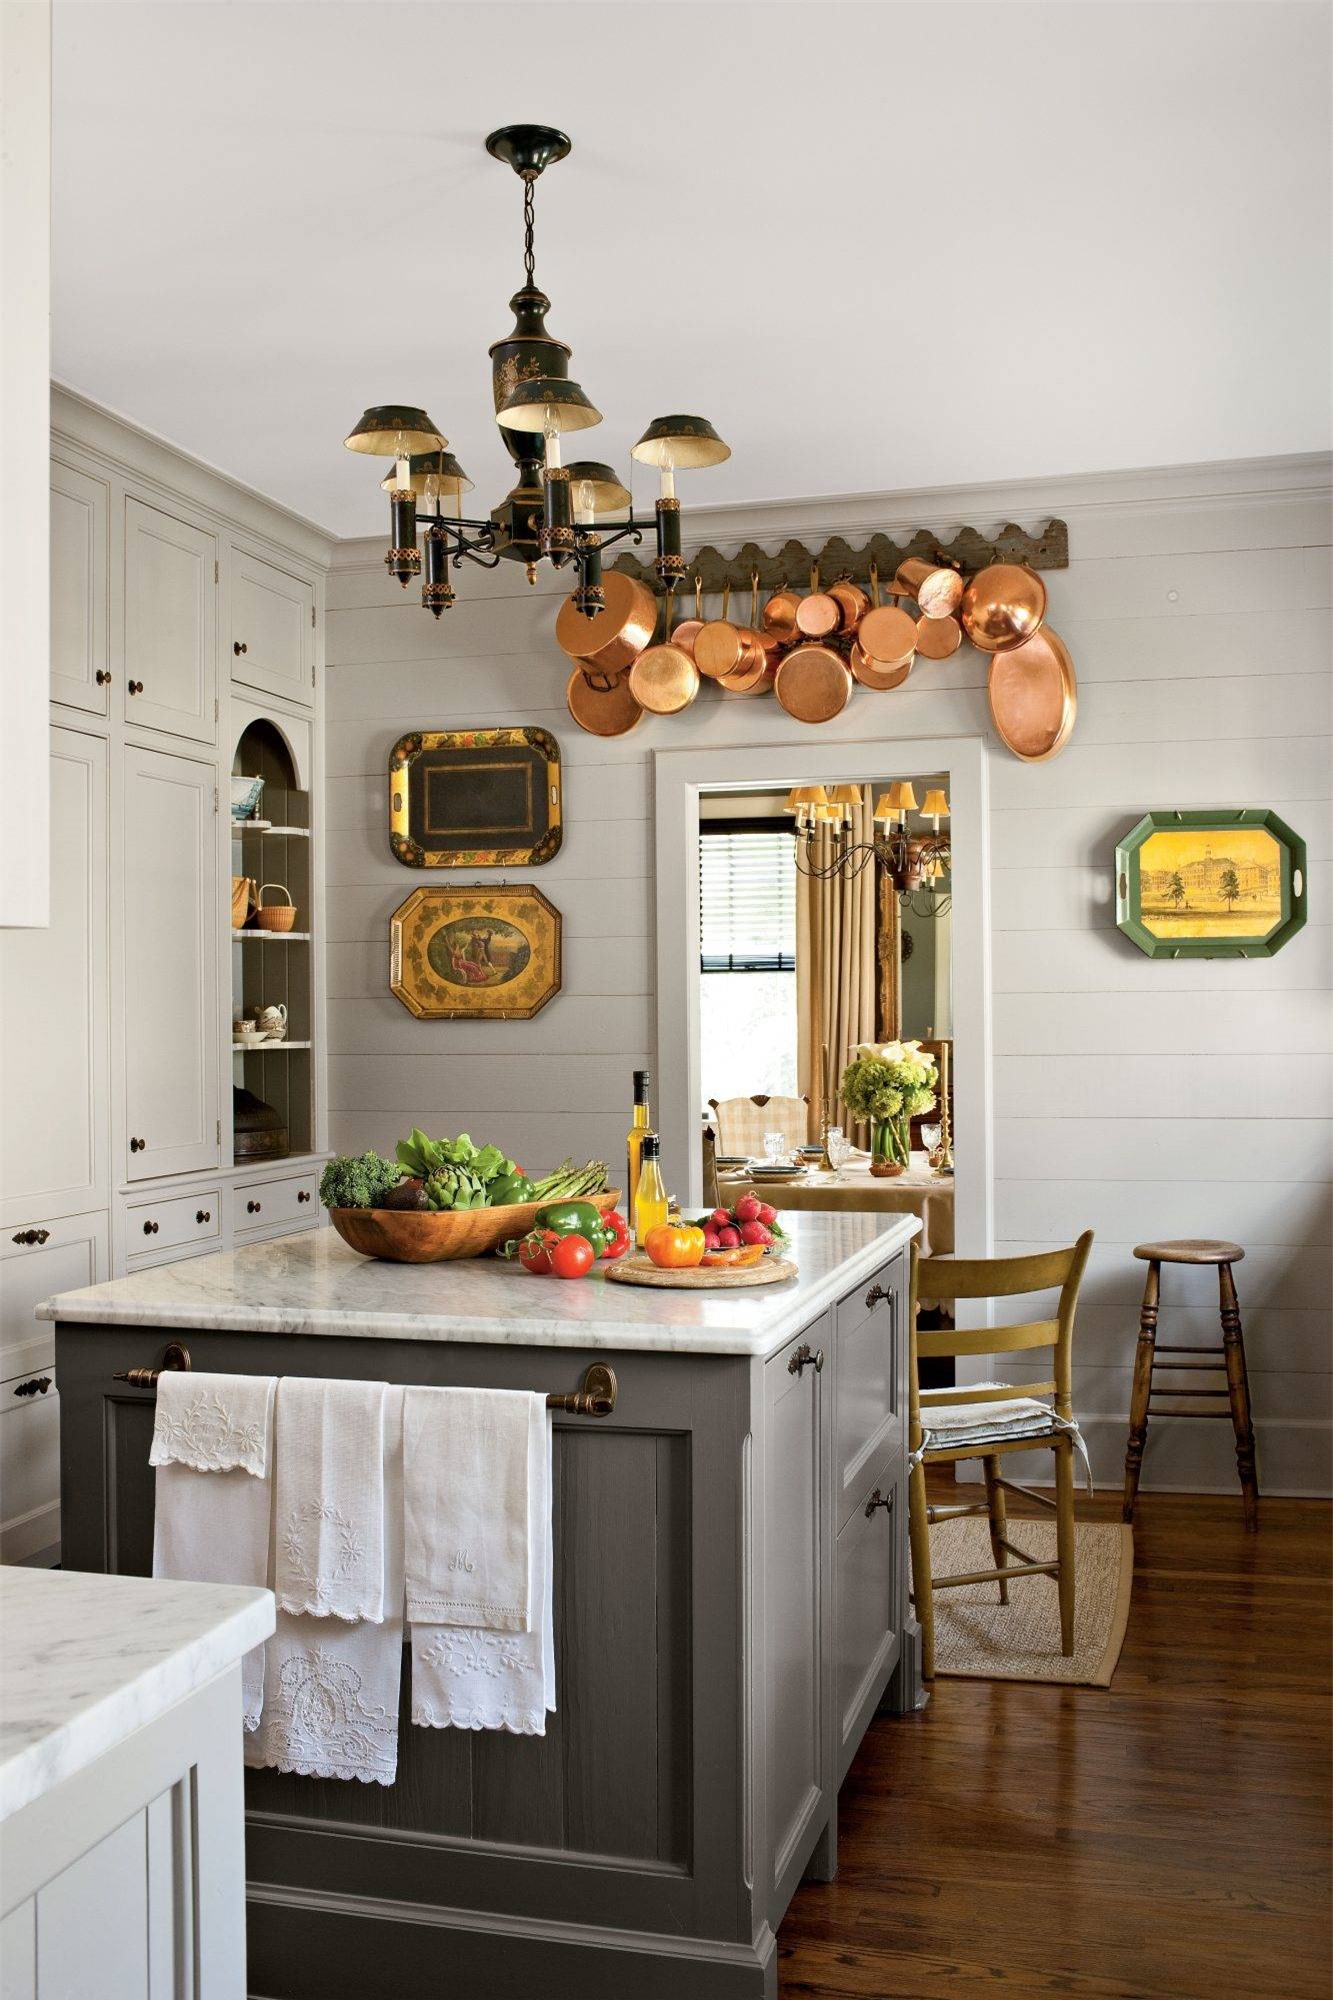 Không gian nấu nướng với màu trung tính có thể khiến căn phòng thêm tẻ nhạt. Tuy nhiên, màu ghi sáng với nhiều sắc độ sẽ thêm cuốn hút khi có sự kết hợp với đảo bếp tiện lợi.